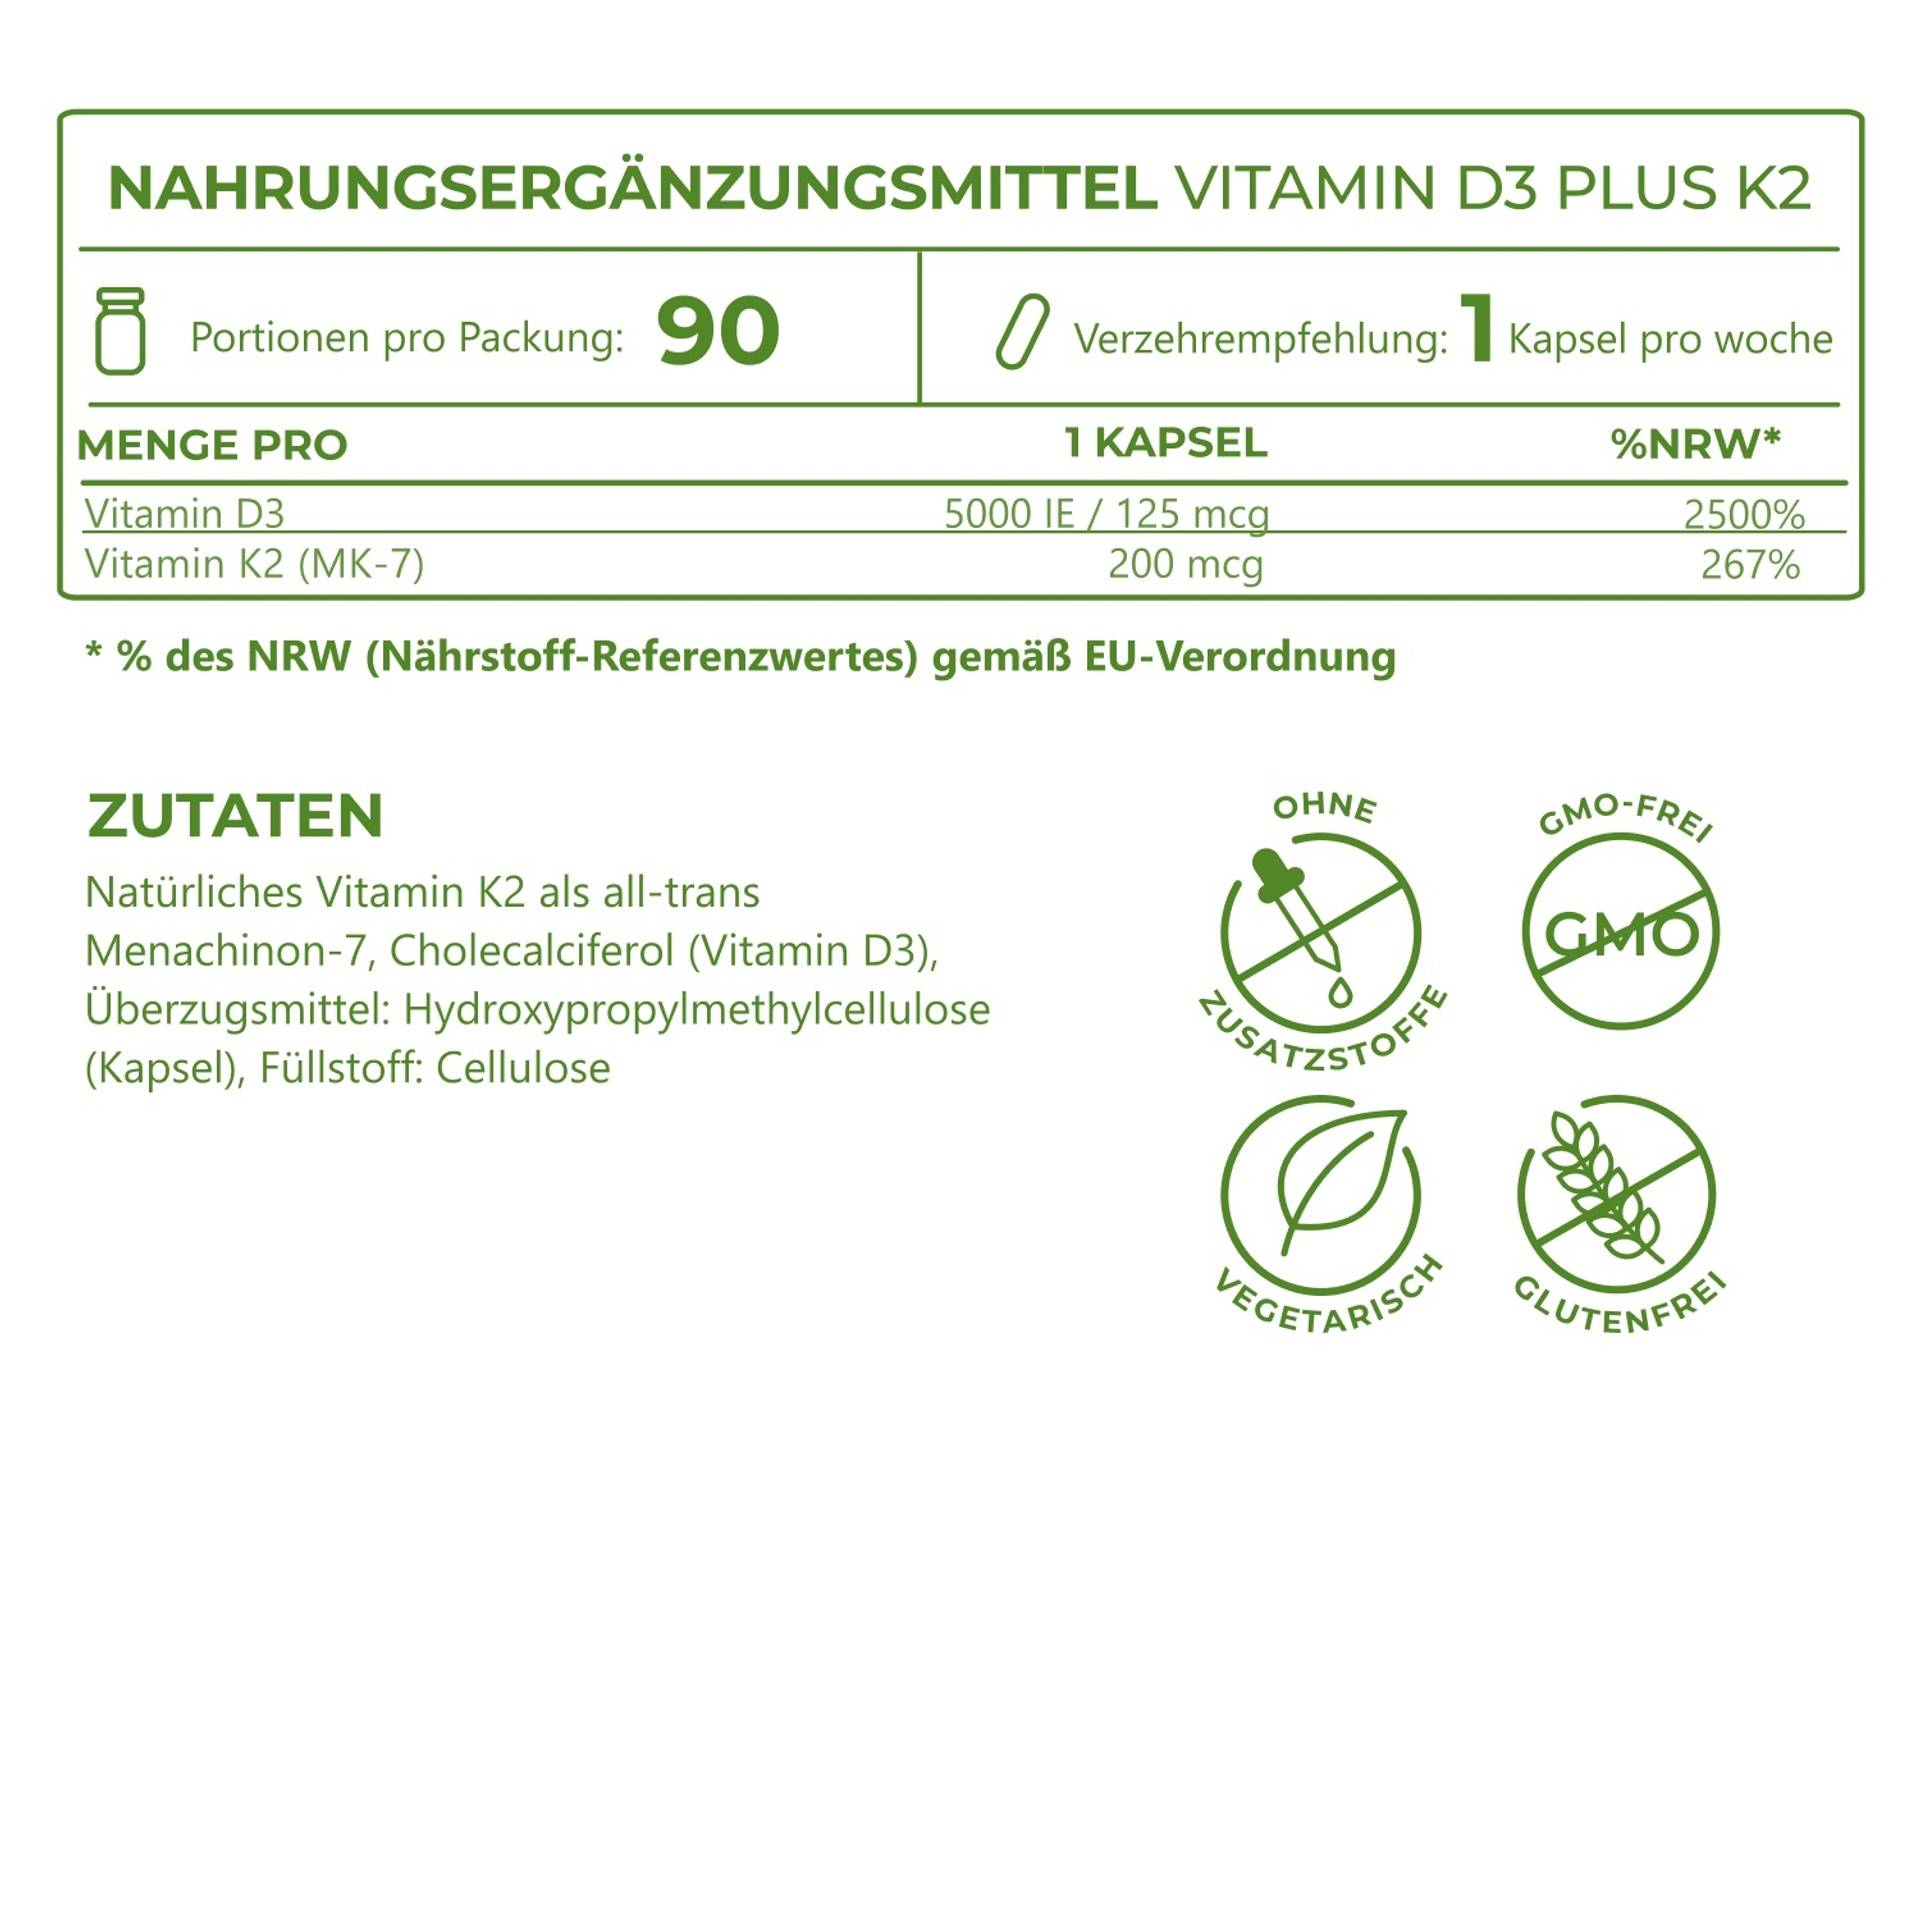 5_Ingredients_Vitamin D3 5000 plus K2 200_6942-13.png